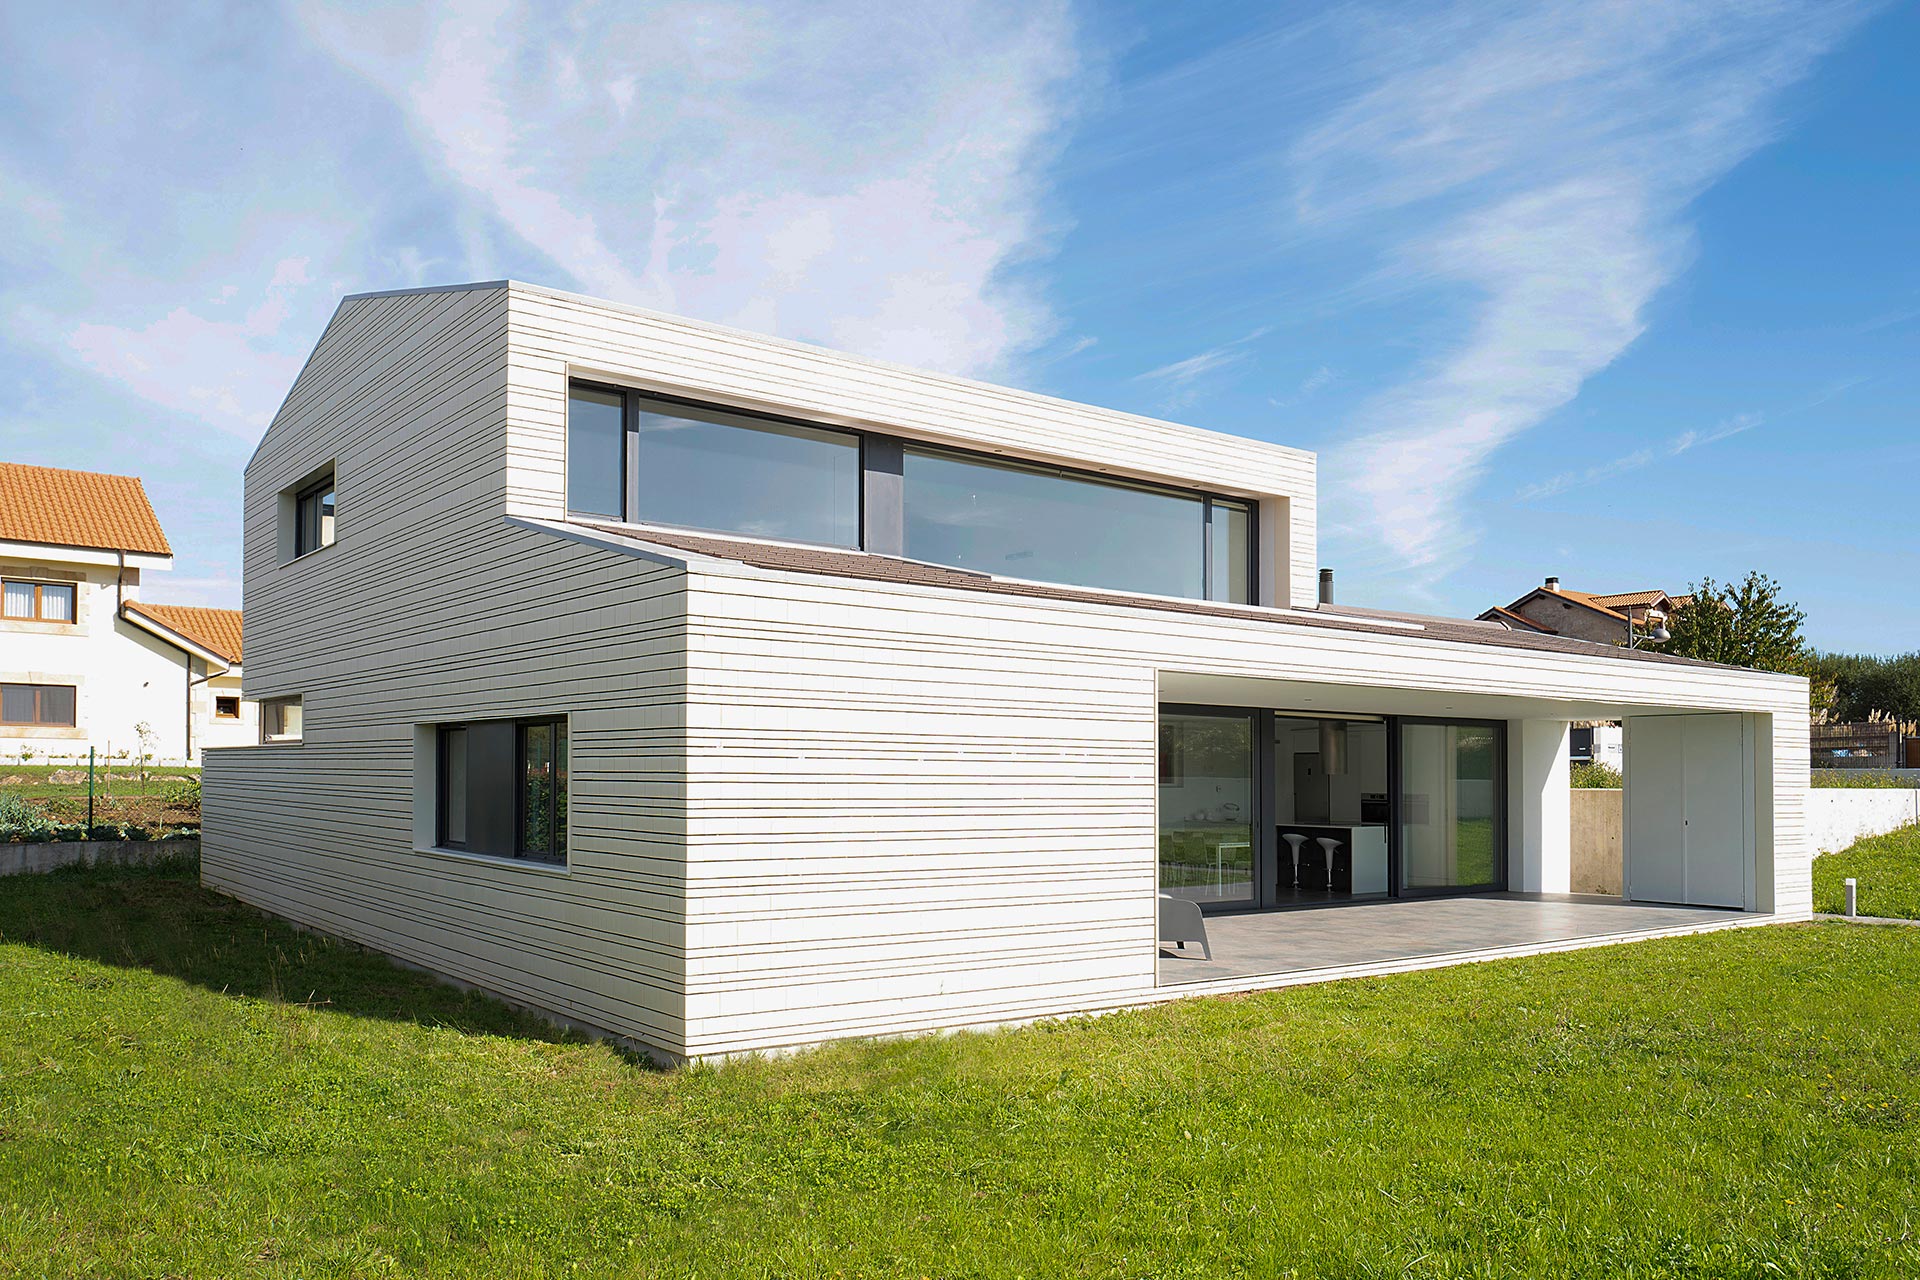 Fachada de ladrillo blanco en casa moderna diseñada por Moah Arquitectos en Villaverde, Cantabria